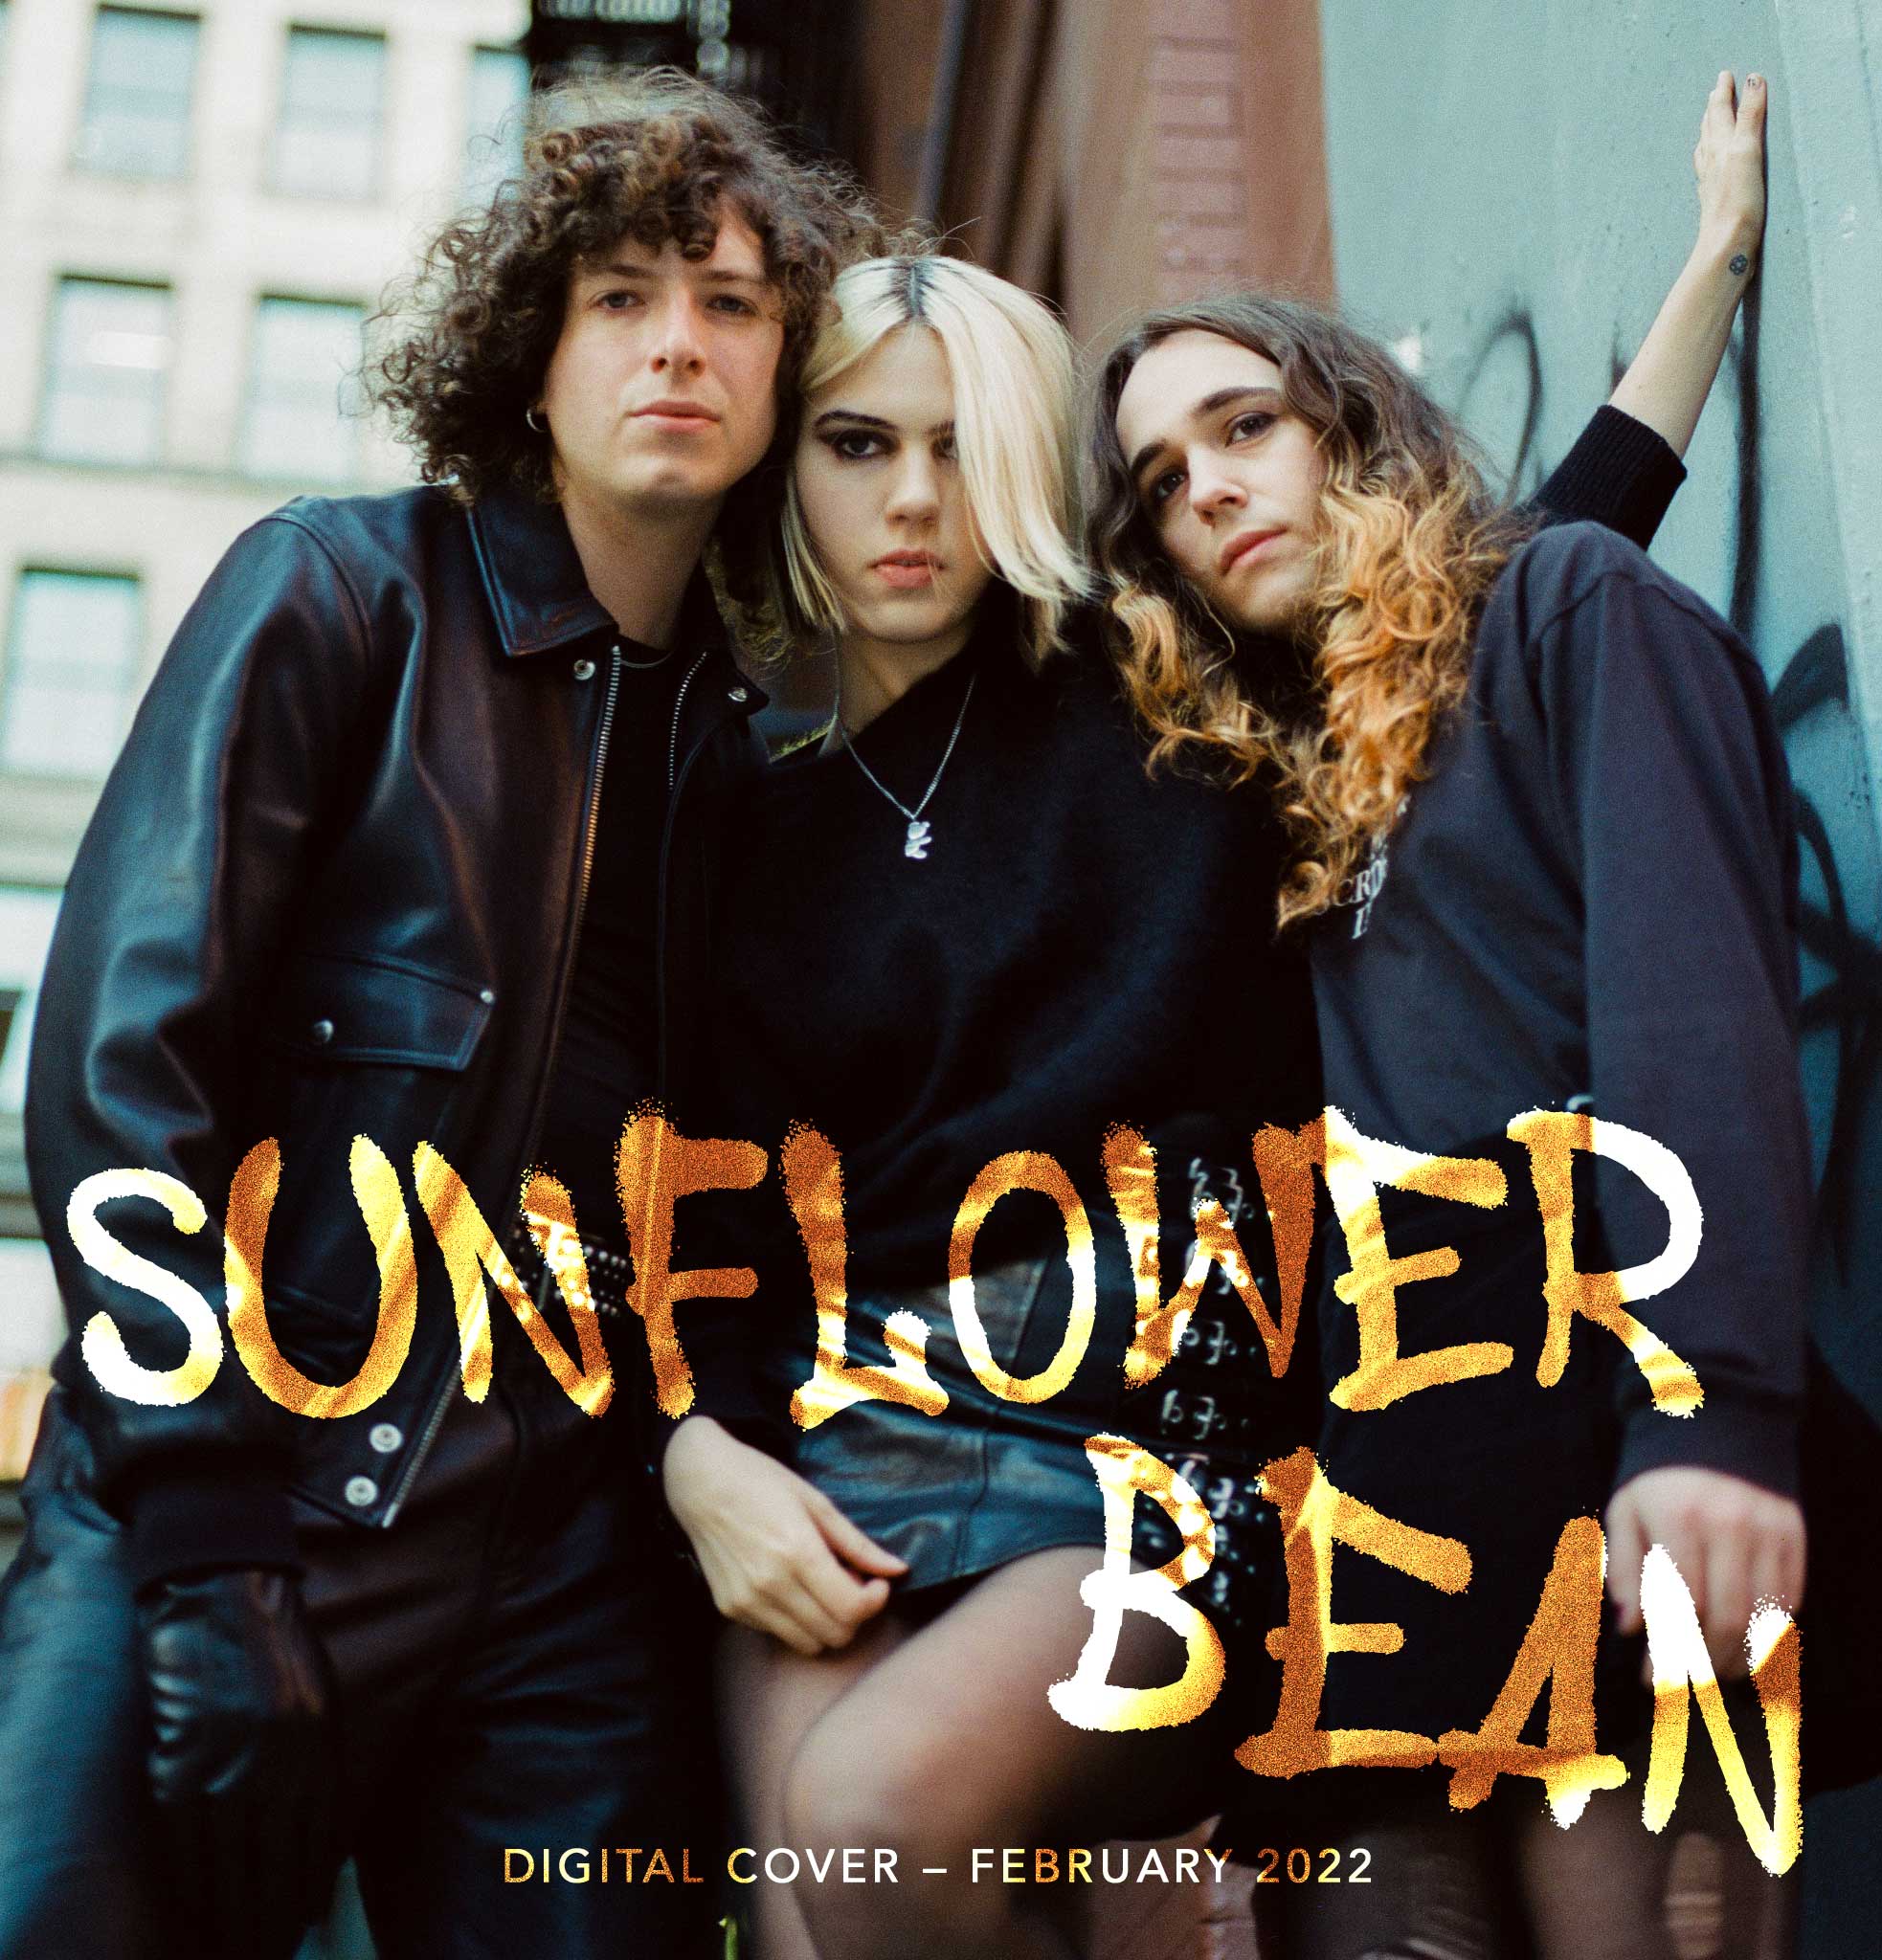 Sunflower Bean interview